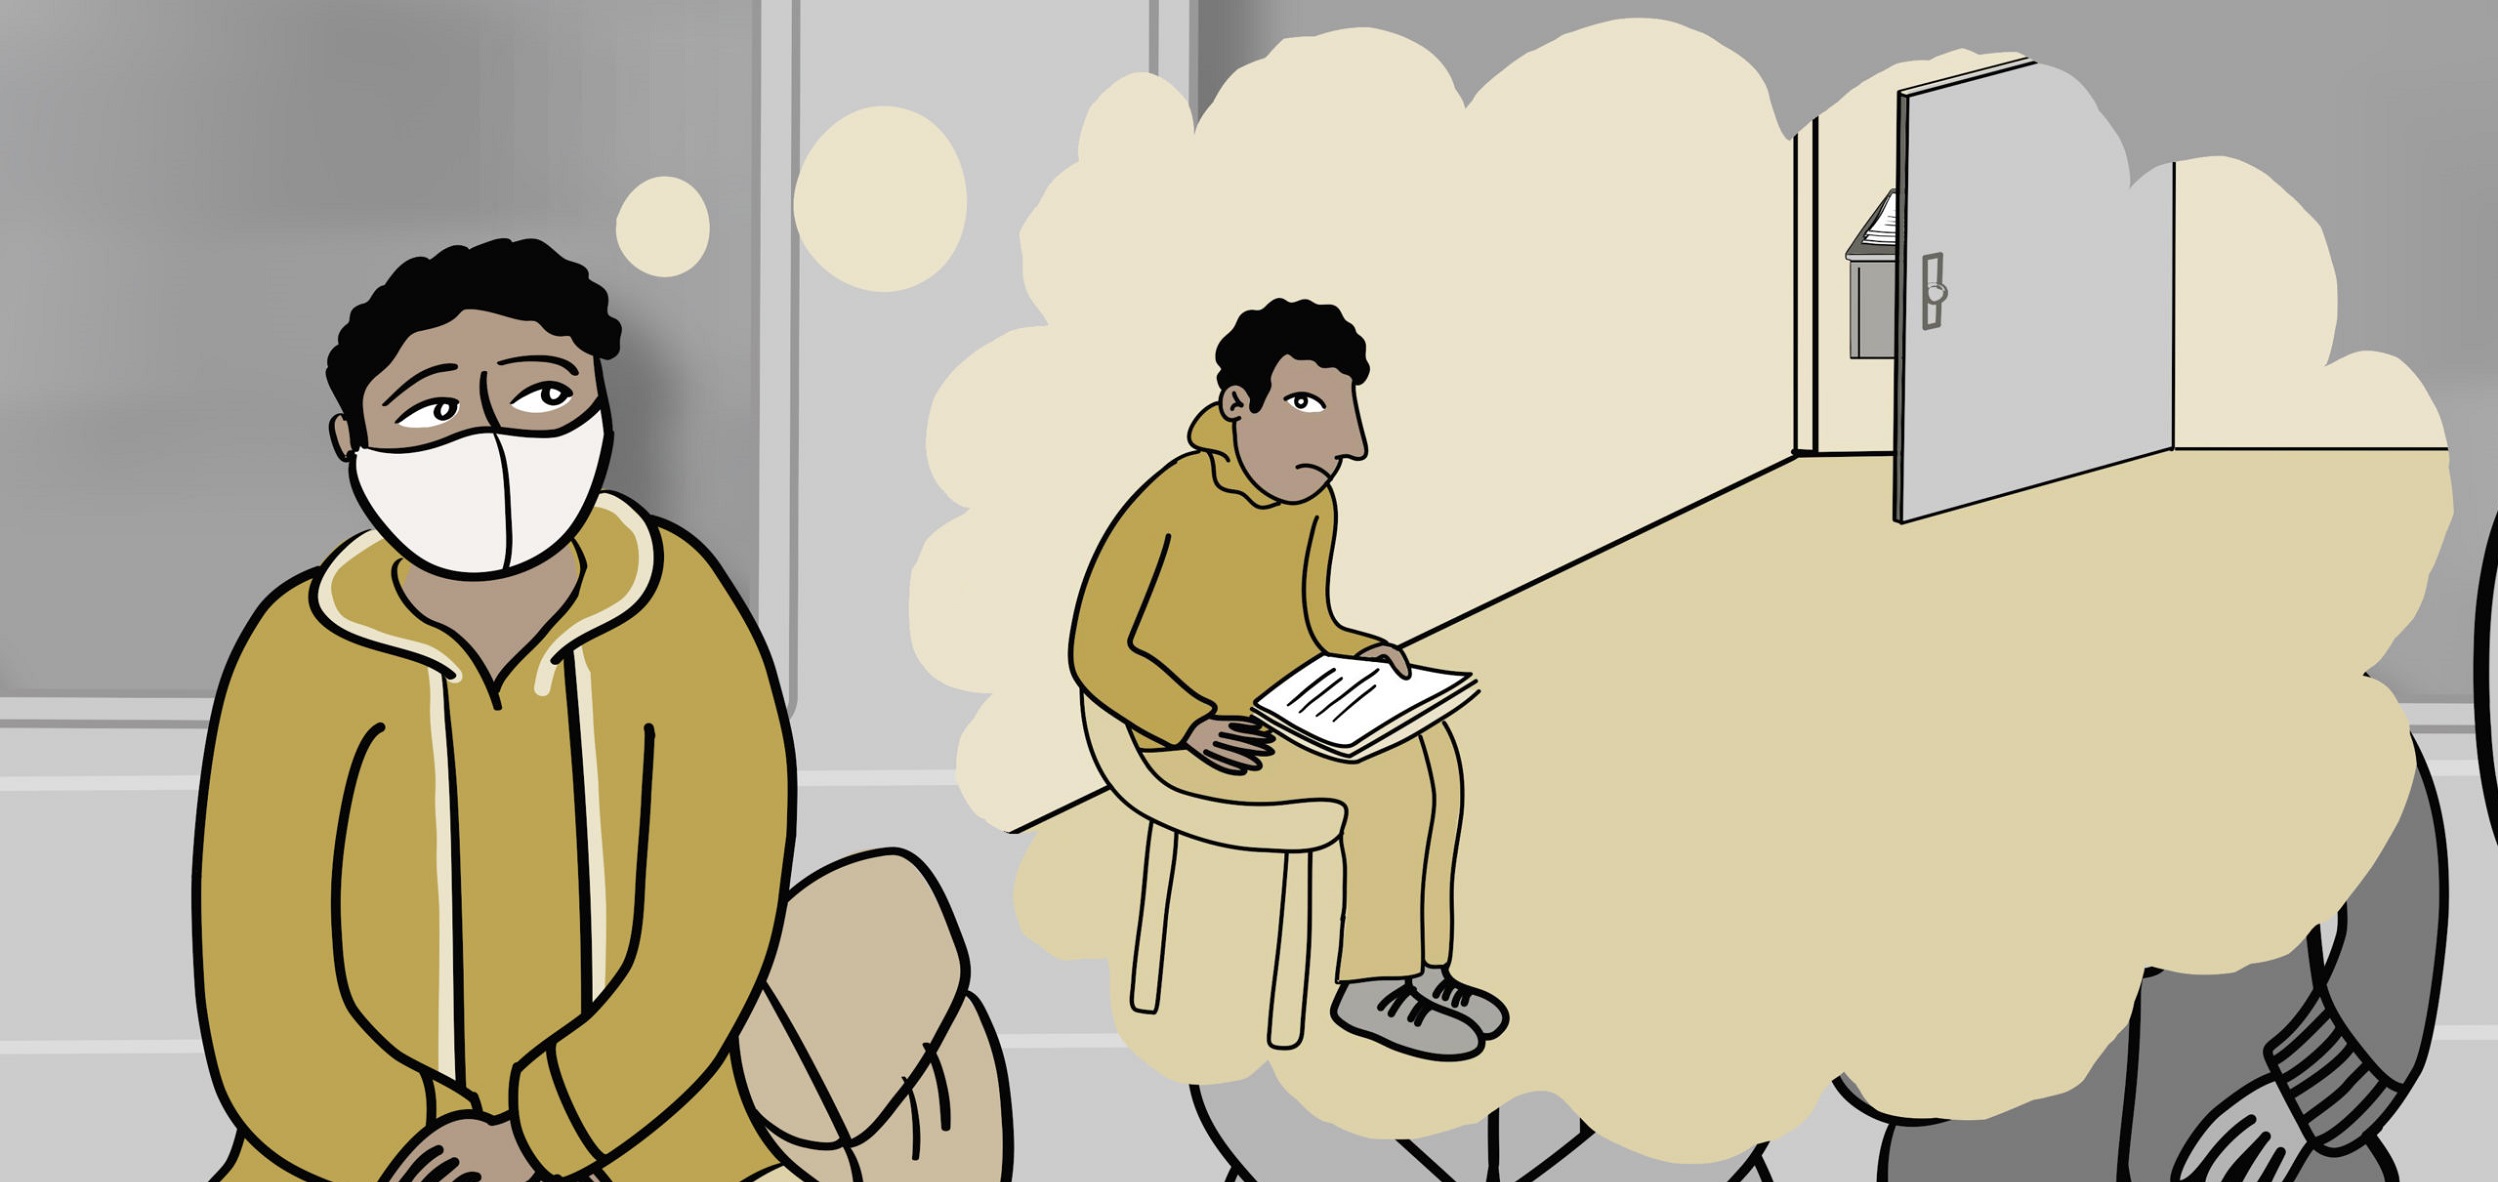 Ein Mensch mit Maske sitzt auf einem Stuhl und hat eine Gedankenblase, in welcher er in einem leeren Zimmer vor einem beschriebenen Papier sitzt.